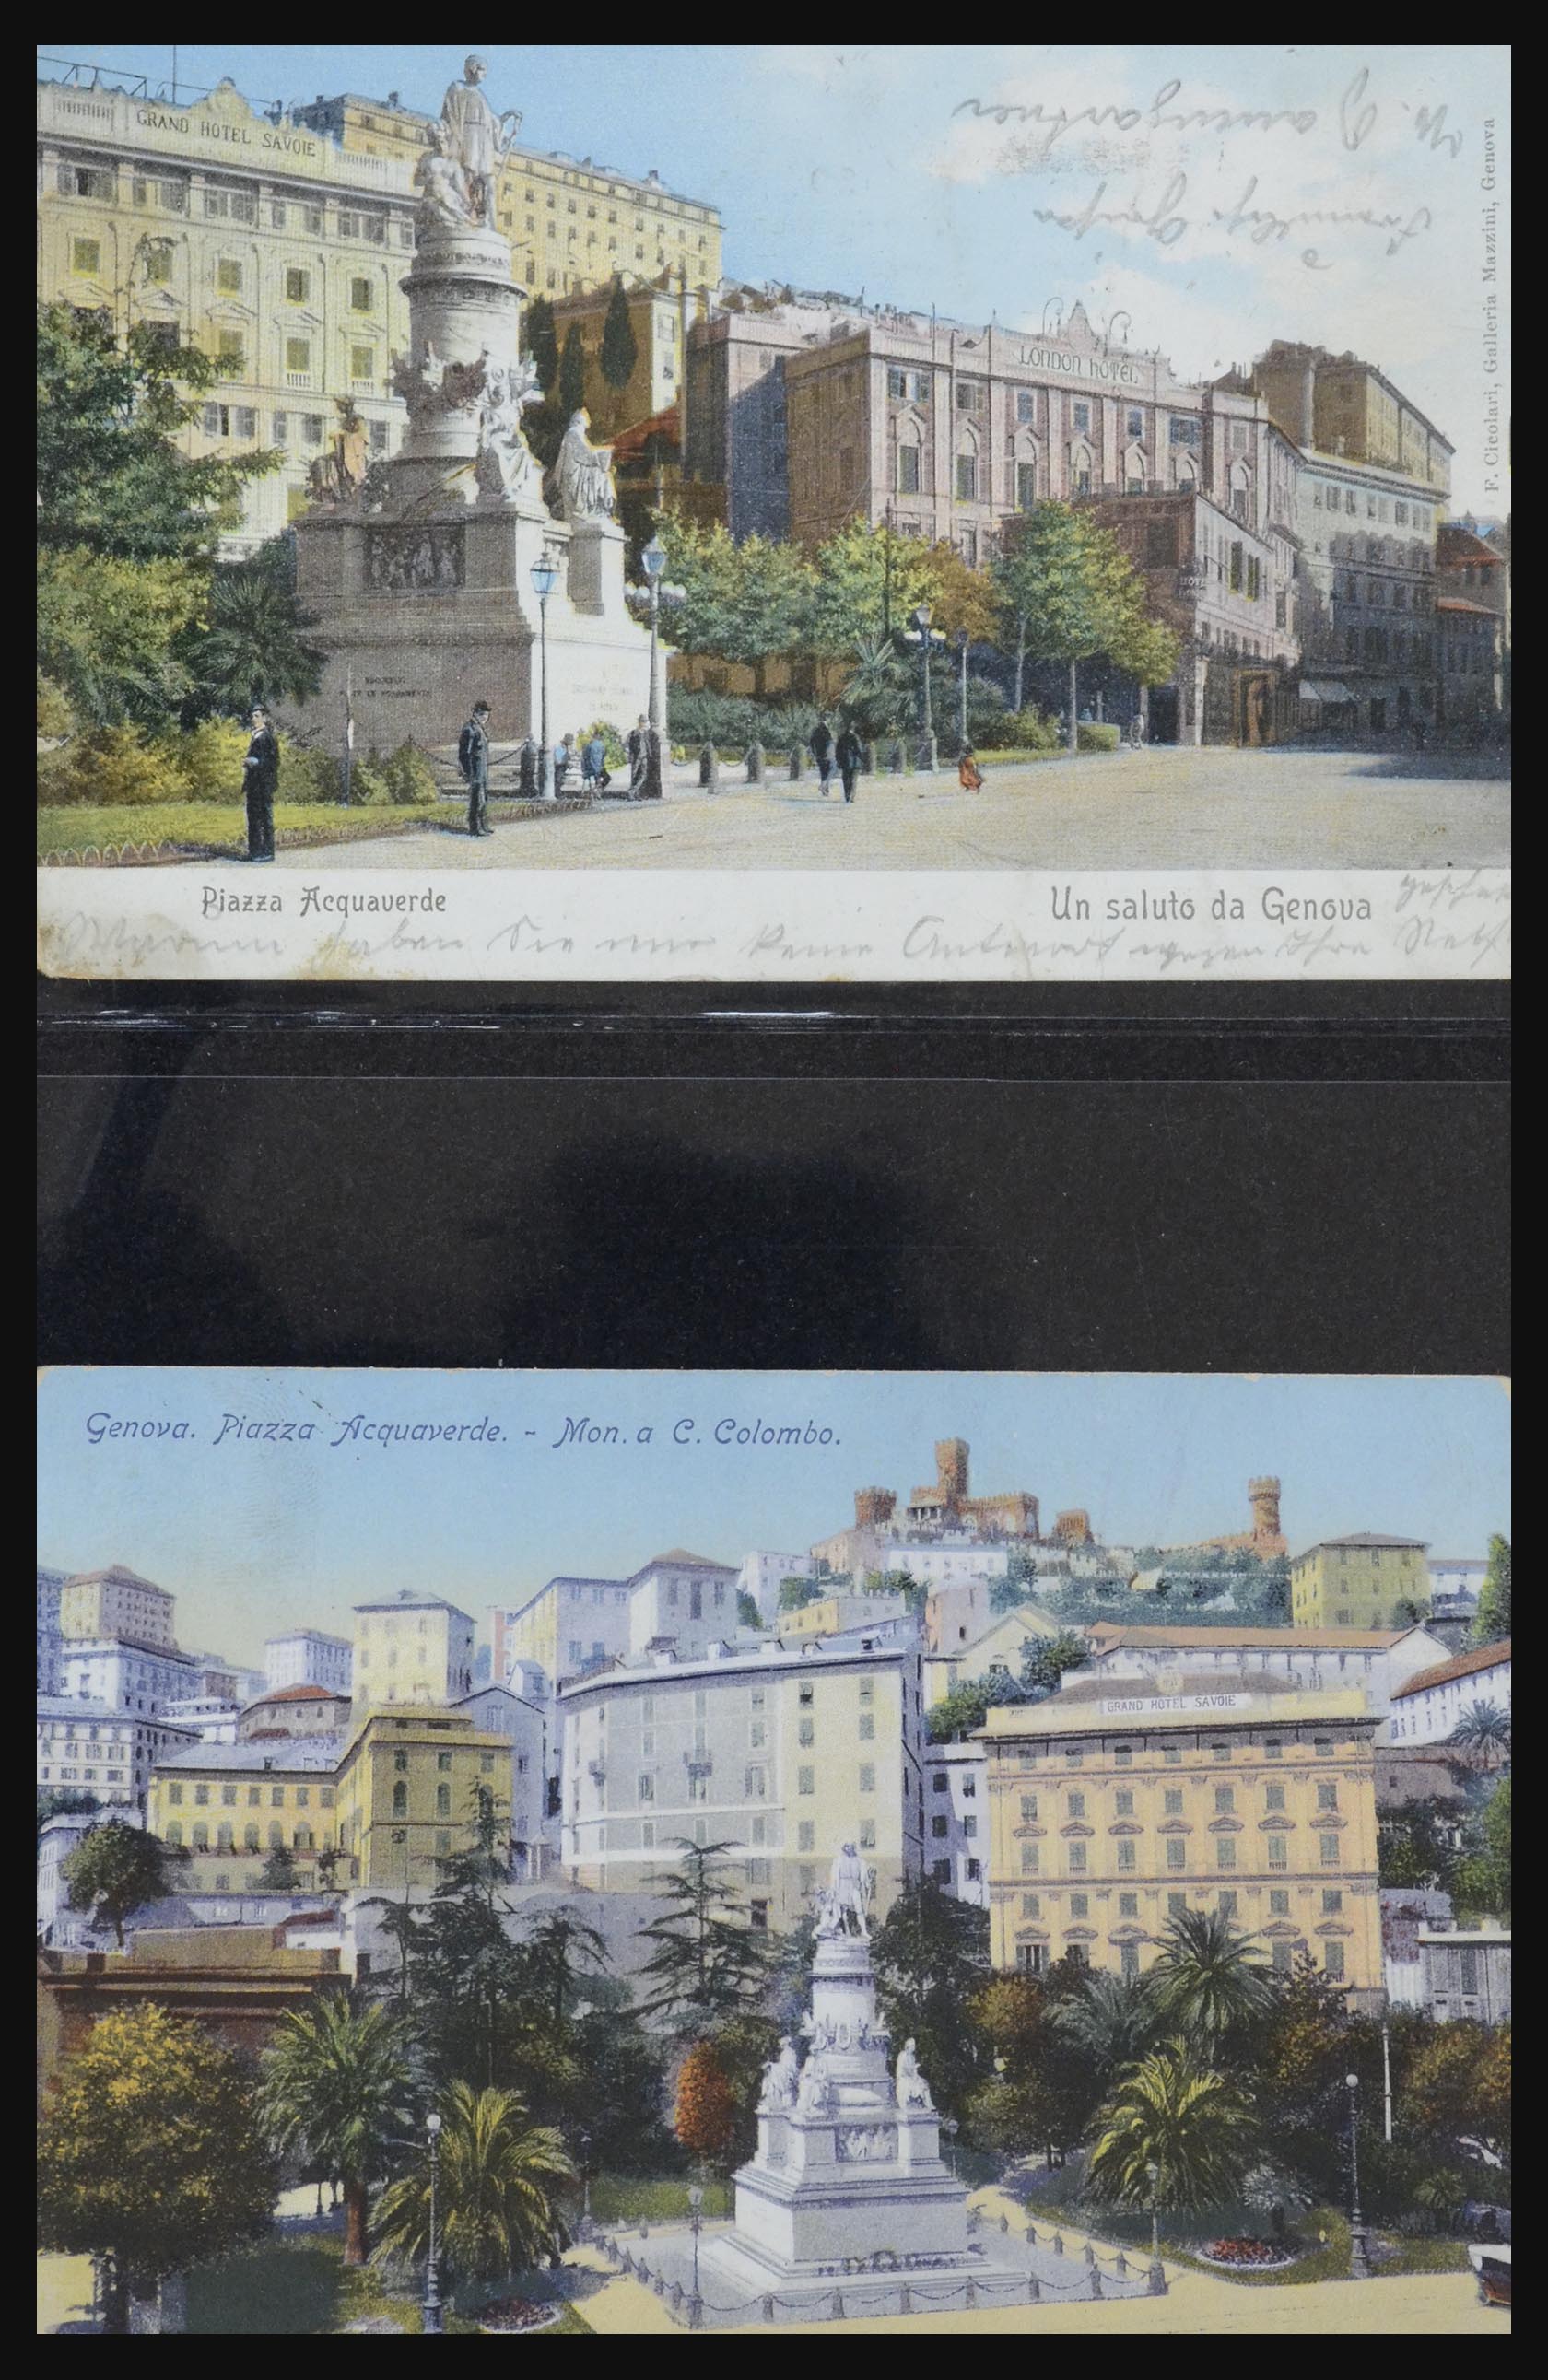 32255 0048 - 32255 Italië kaarten 1900-1945.